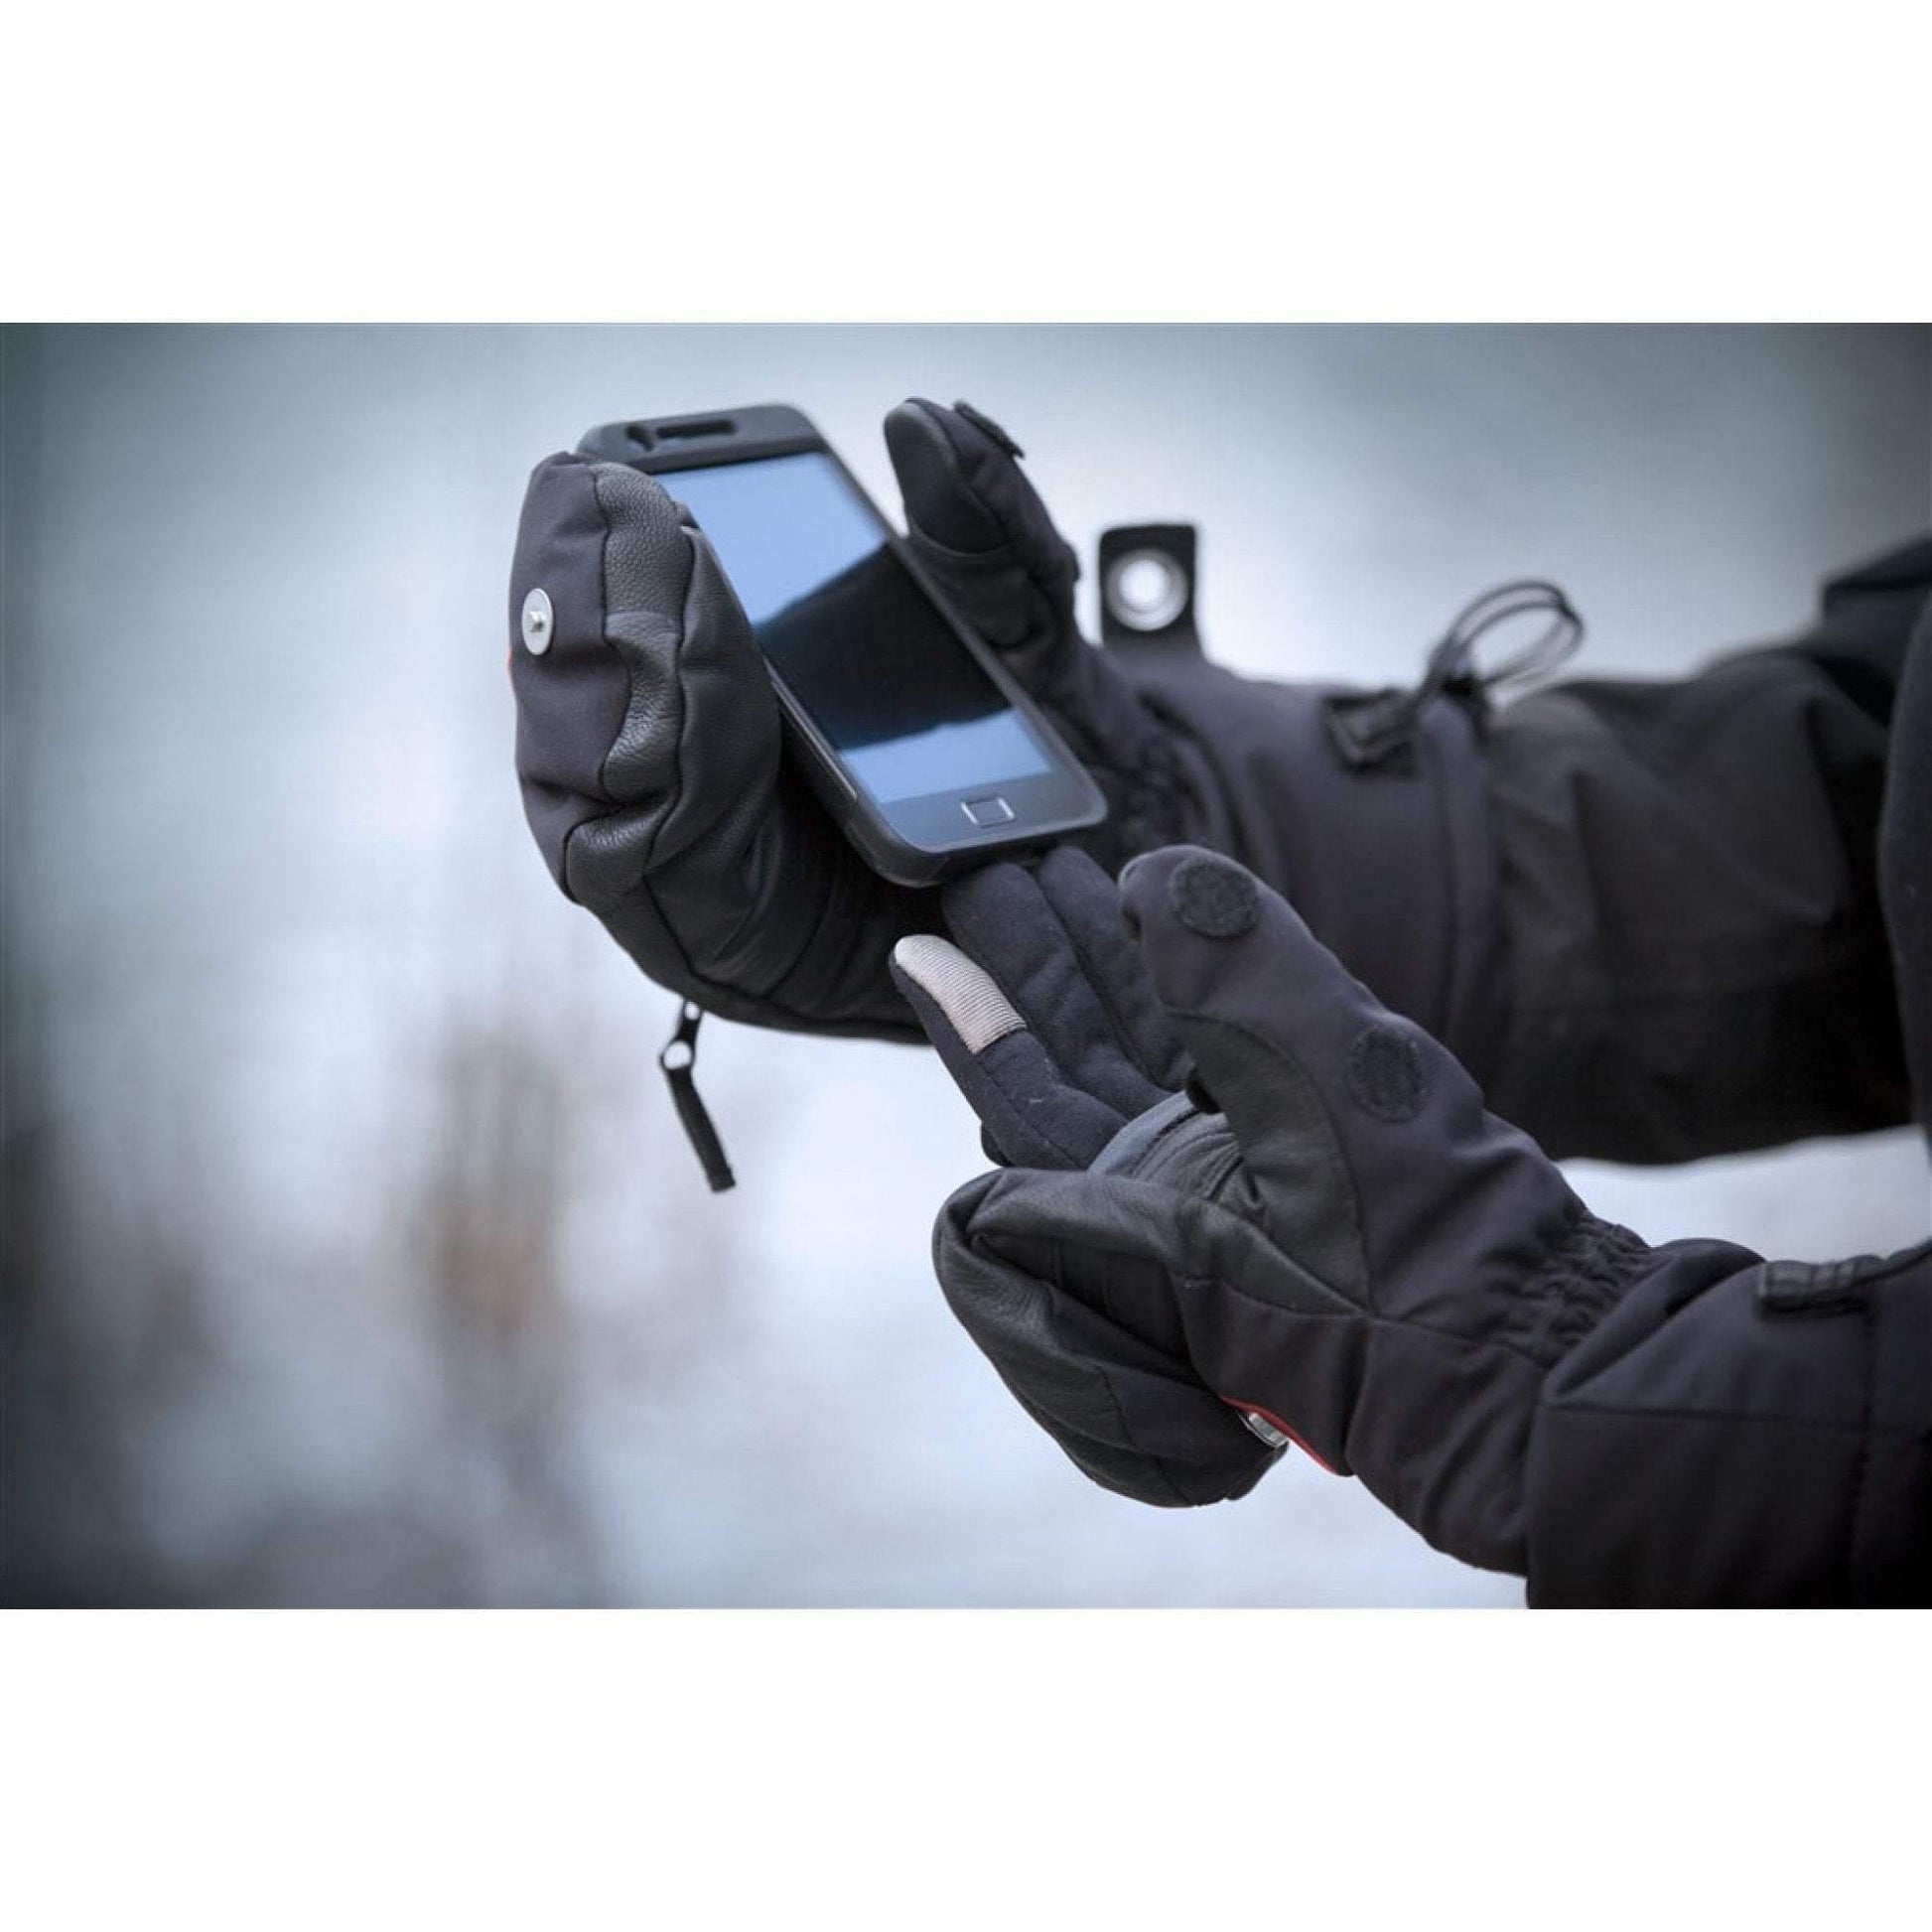 The Heat Company Heat 3 Smart (Handskar) från The Heat Company. | TacNGear - Utrustning för polis och militär och outdoor.